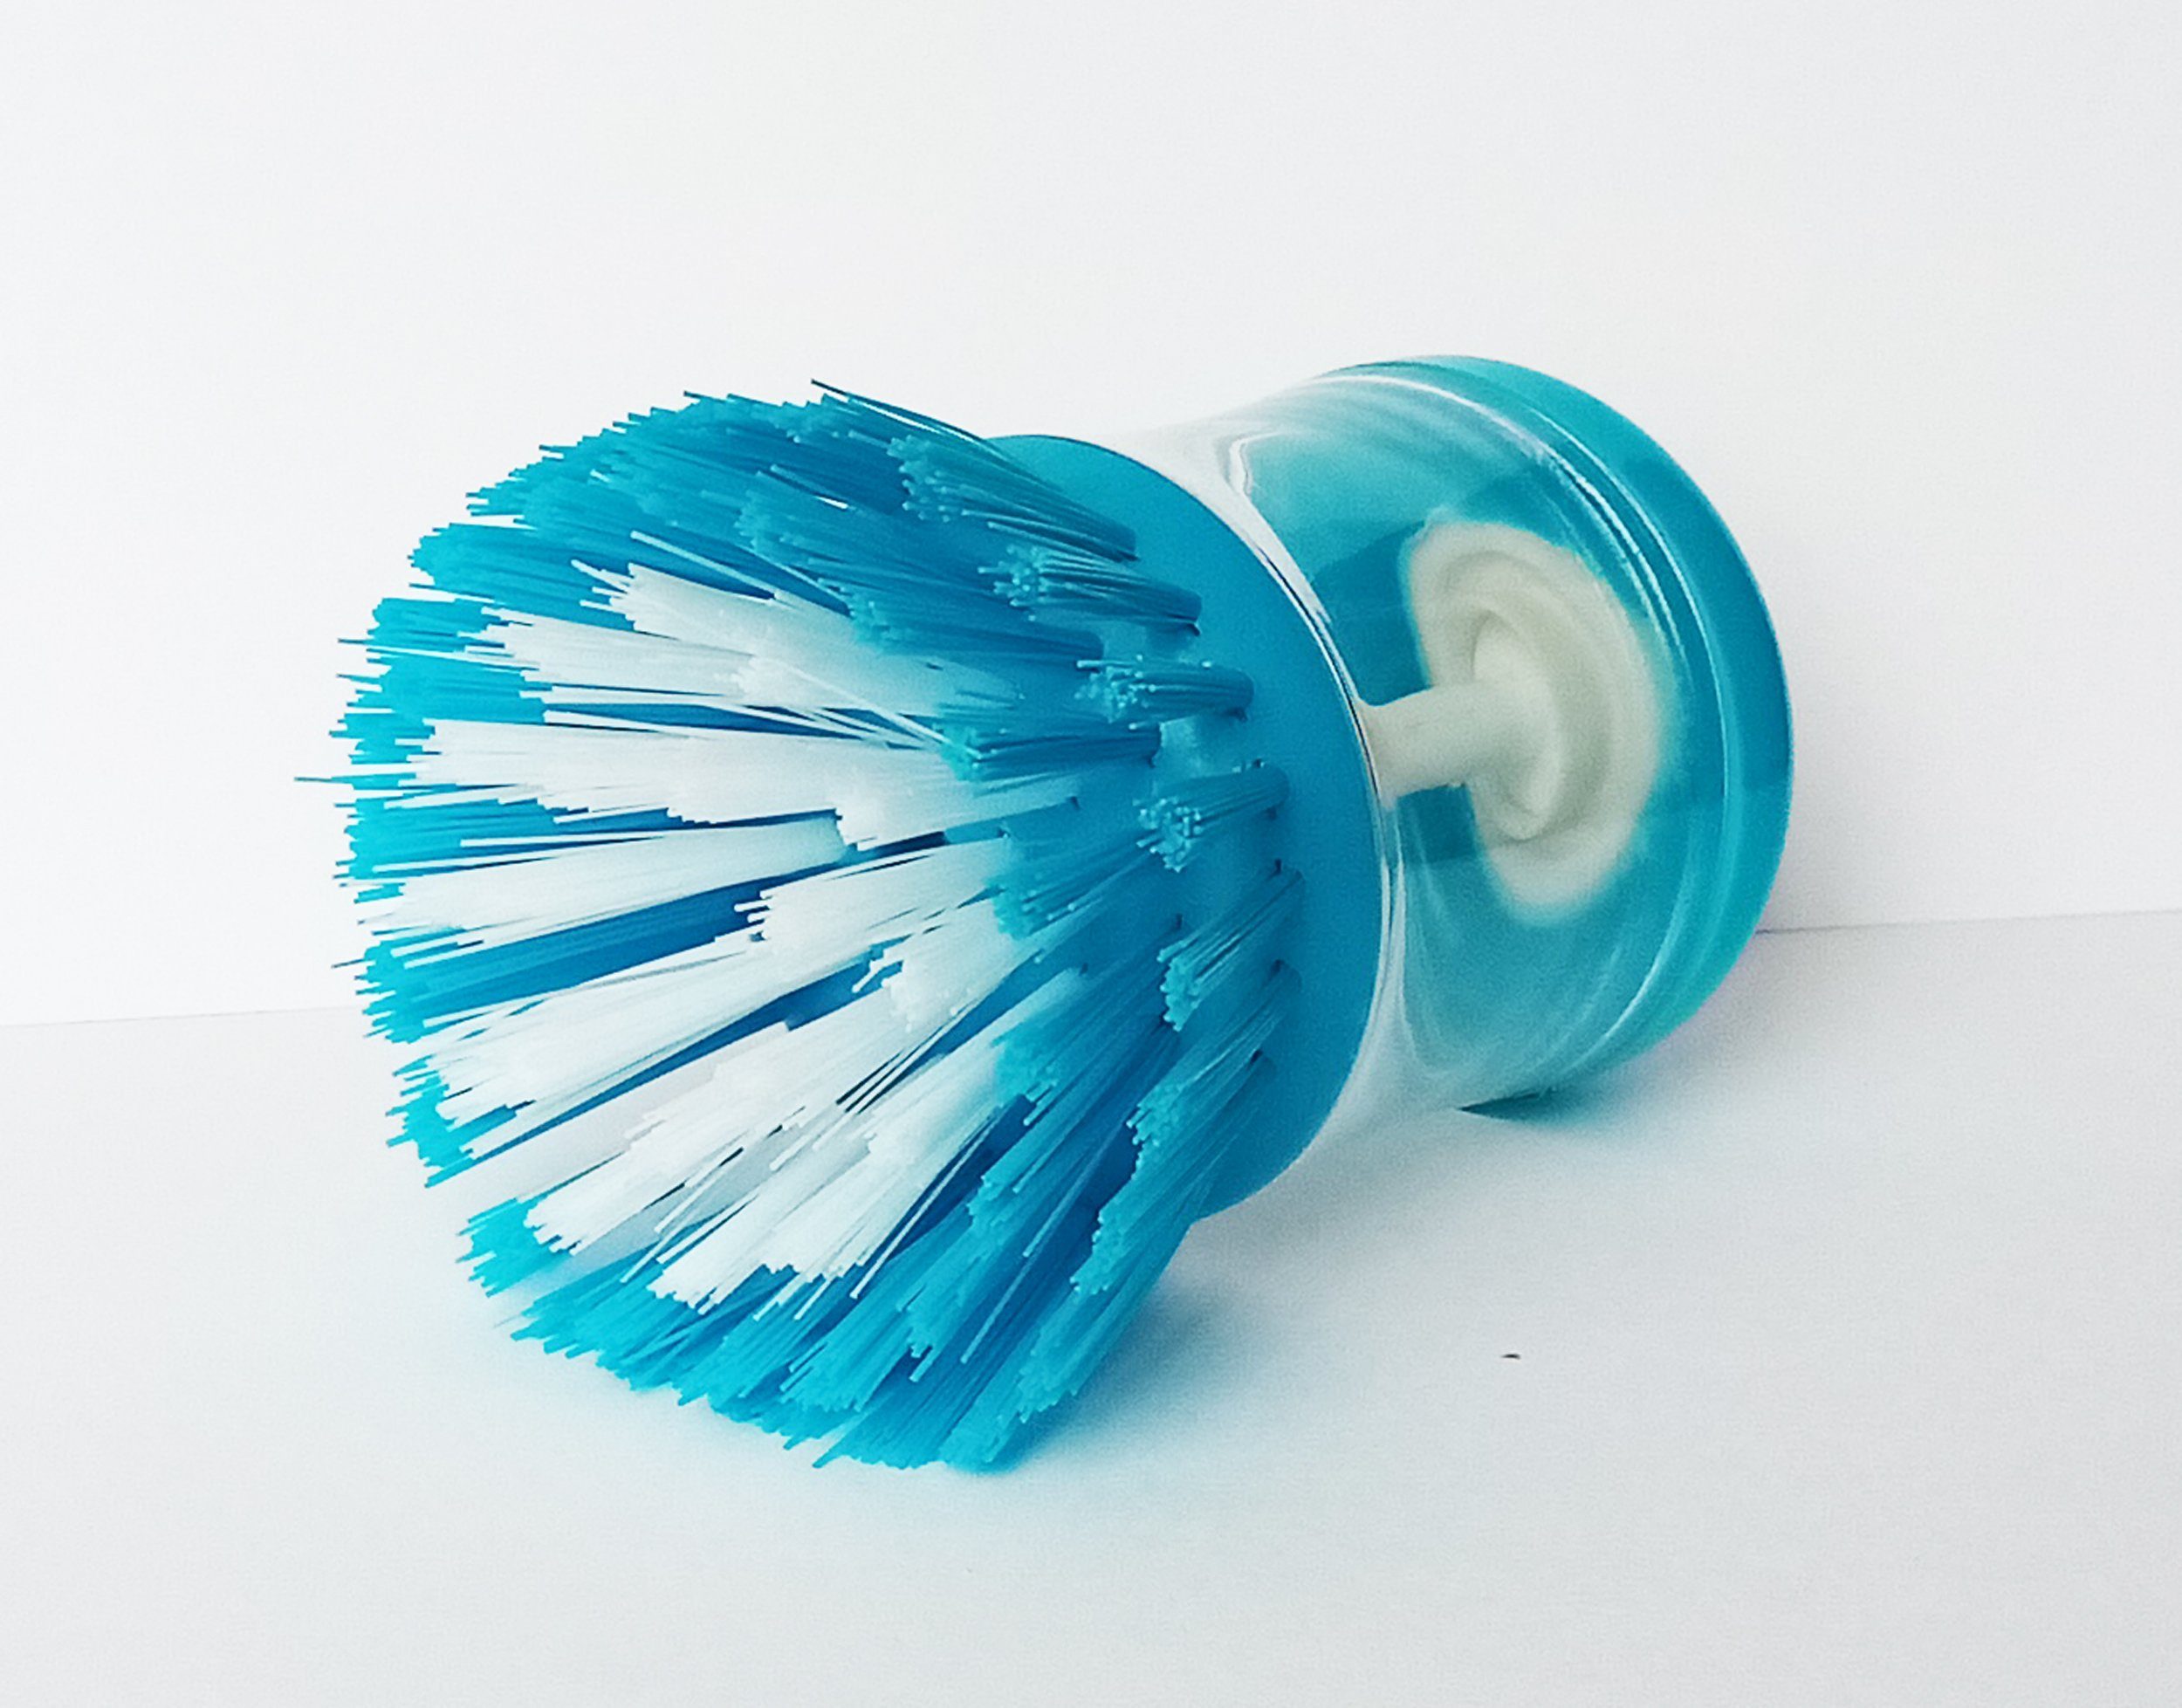 SPÜLBÜRSTE Bürste Geschirrbürste Topfbürste Spülschwamm Spülmittelbehälter mit Reinigungsbürste (Blau), 98